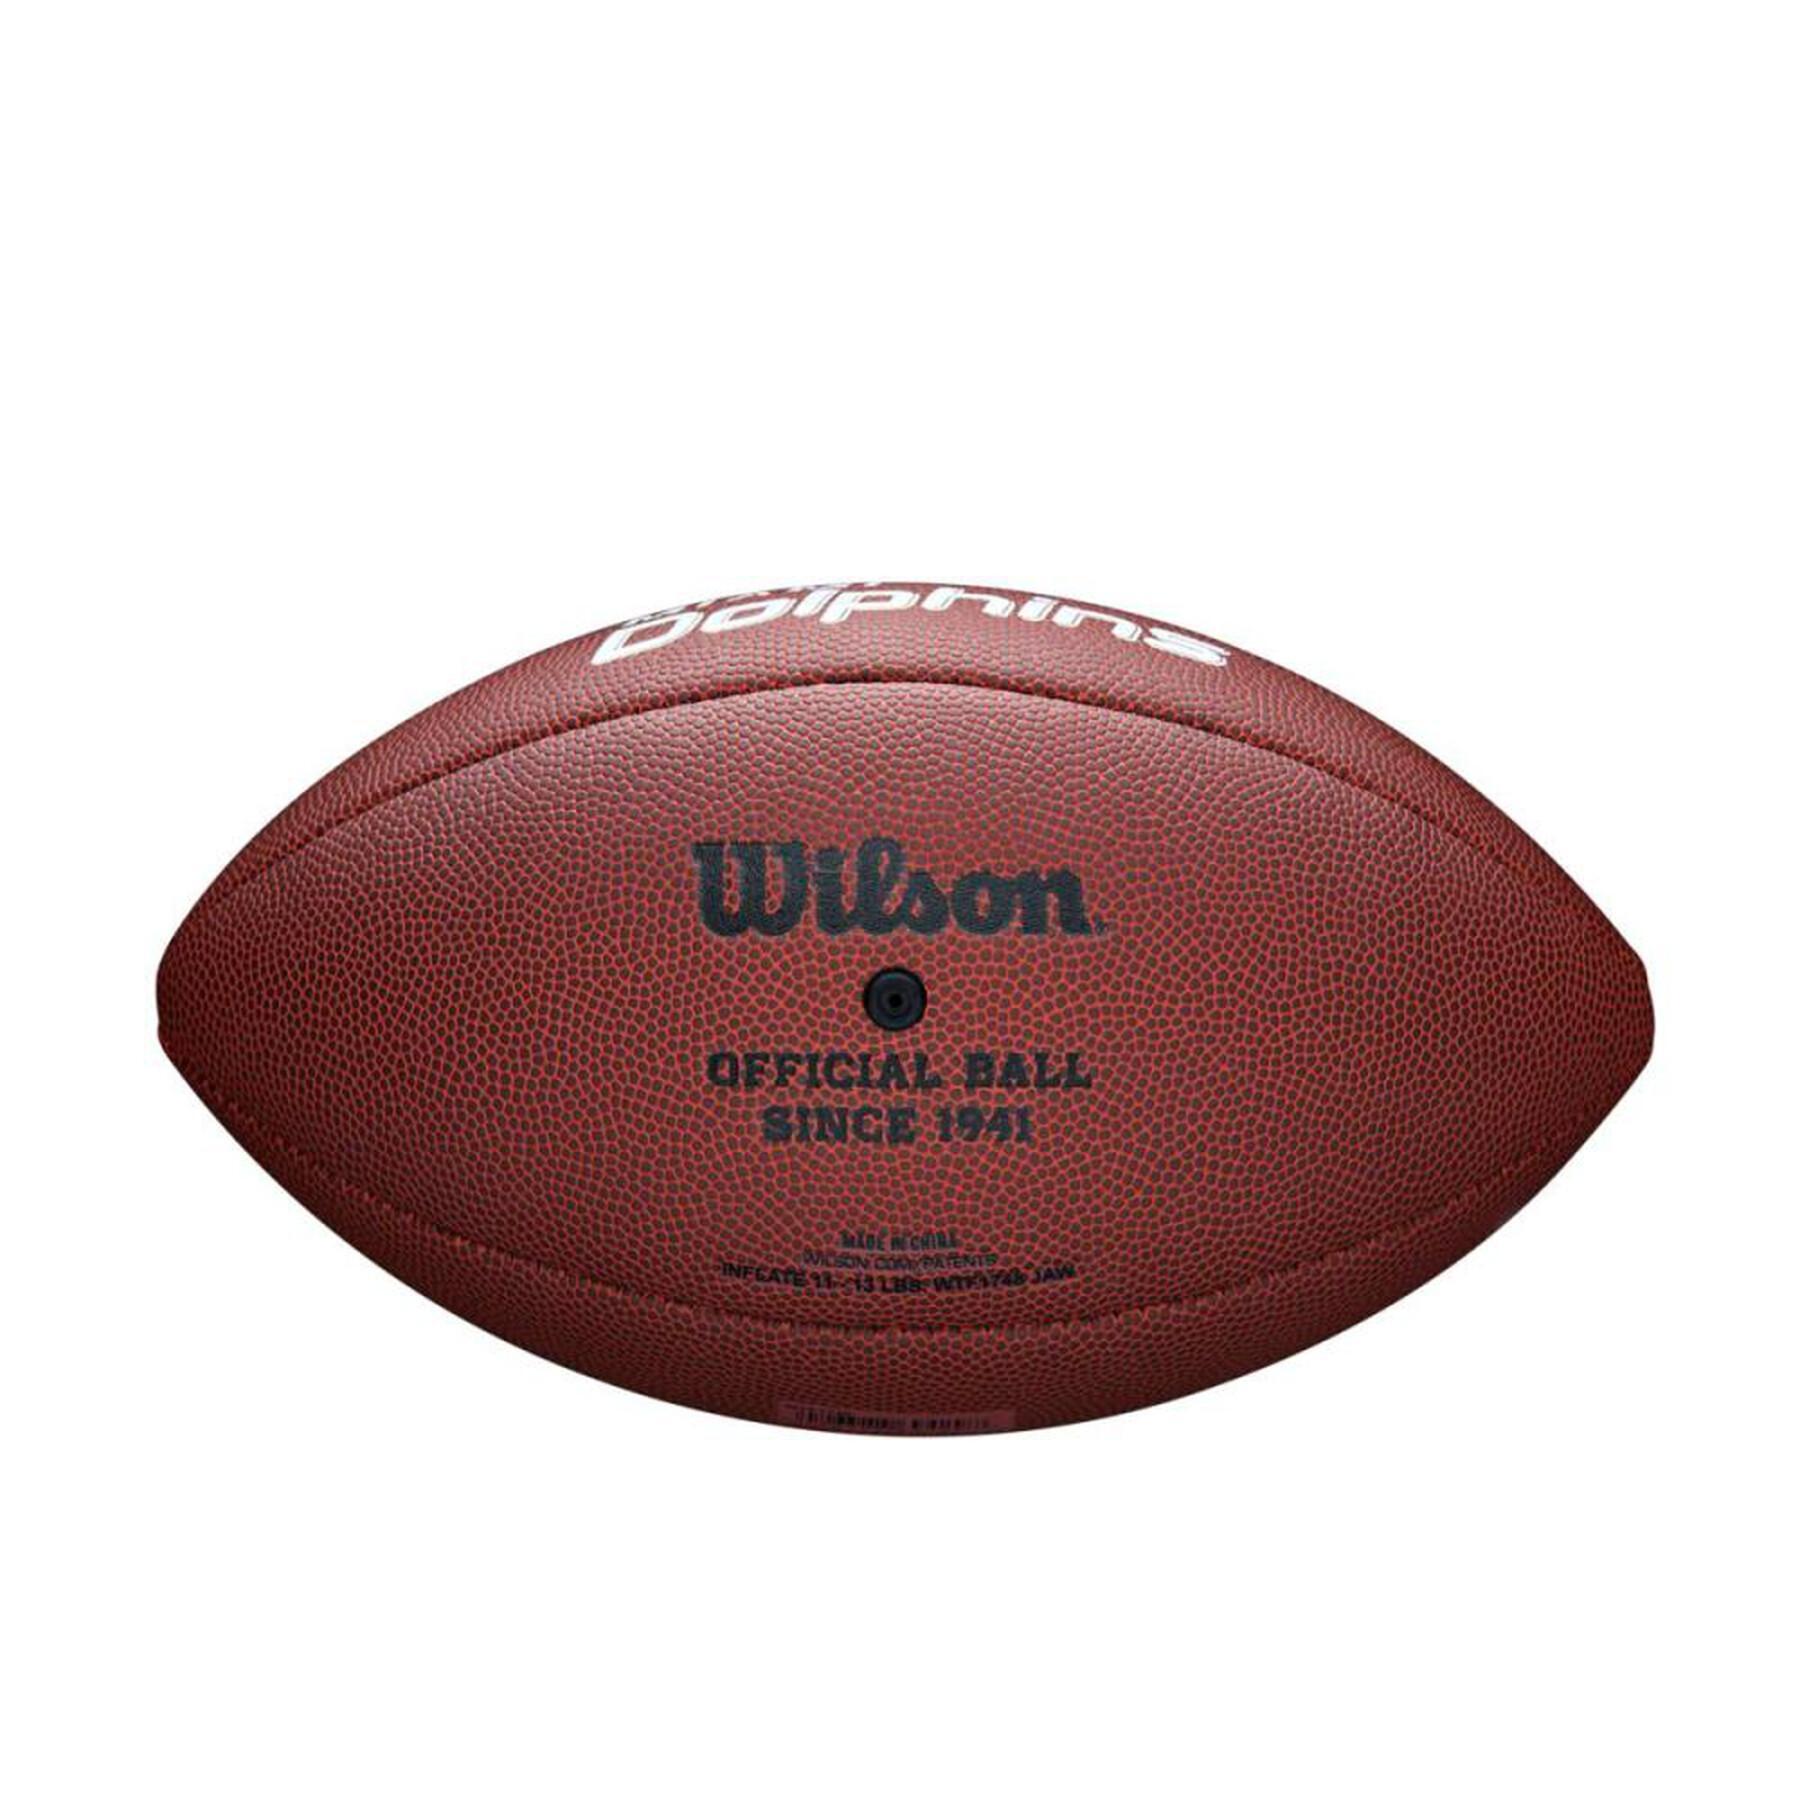 Ballon Wilson Dolphins NFL Licensed